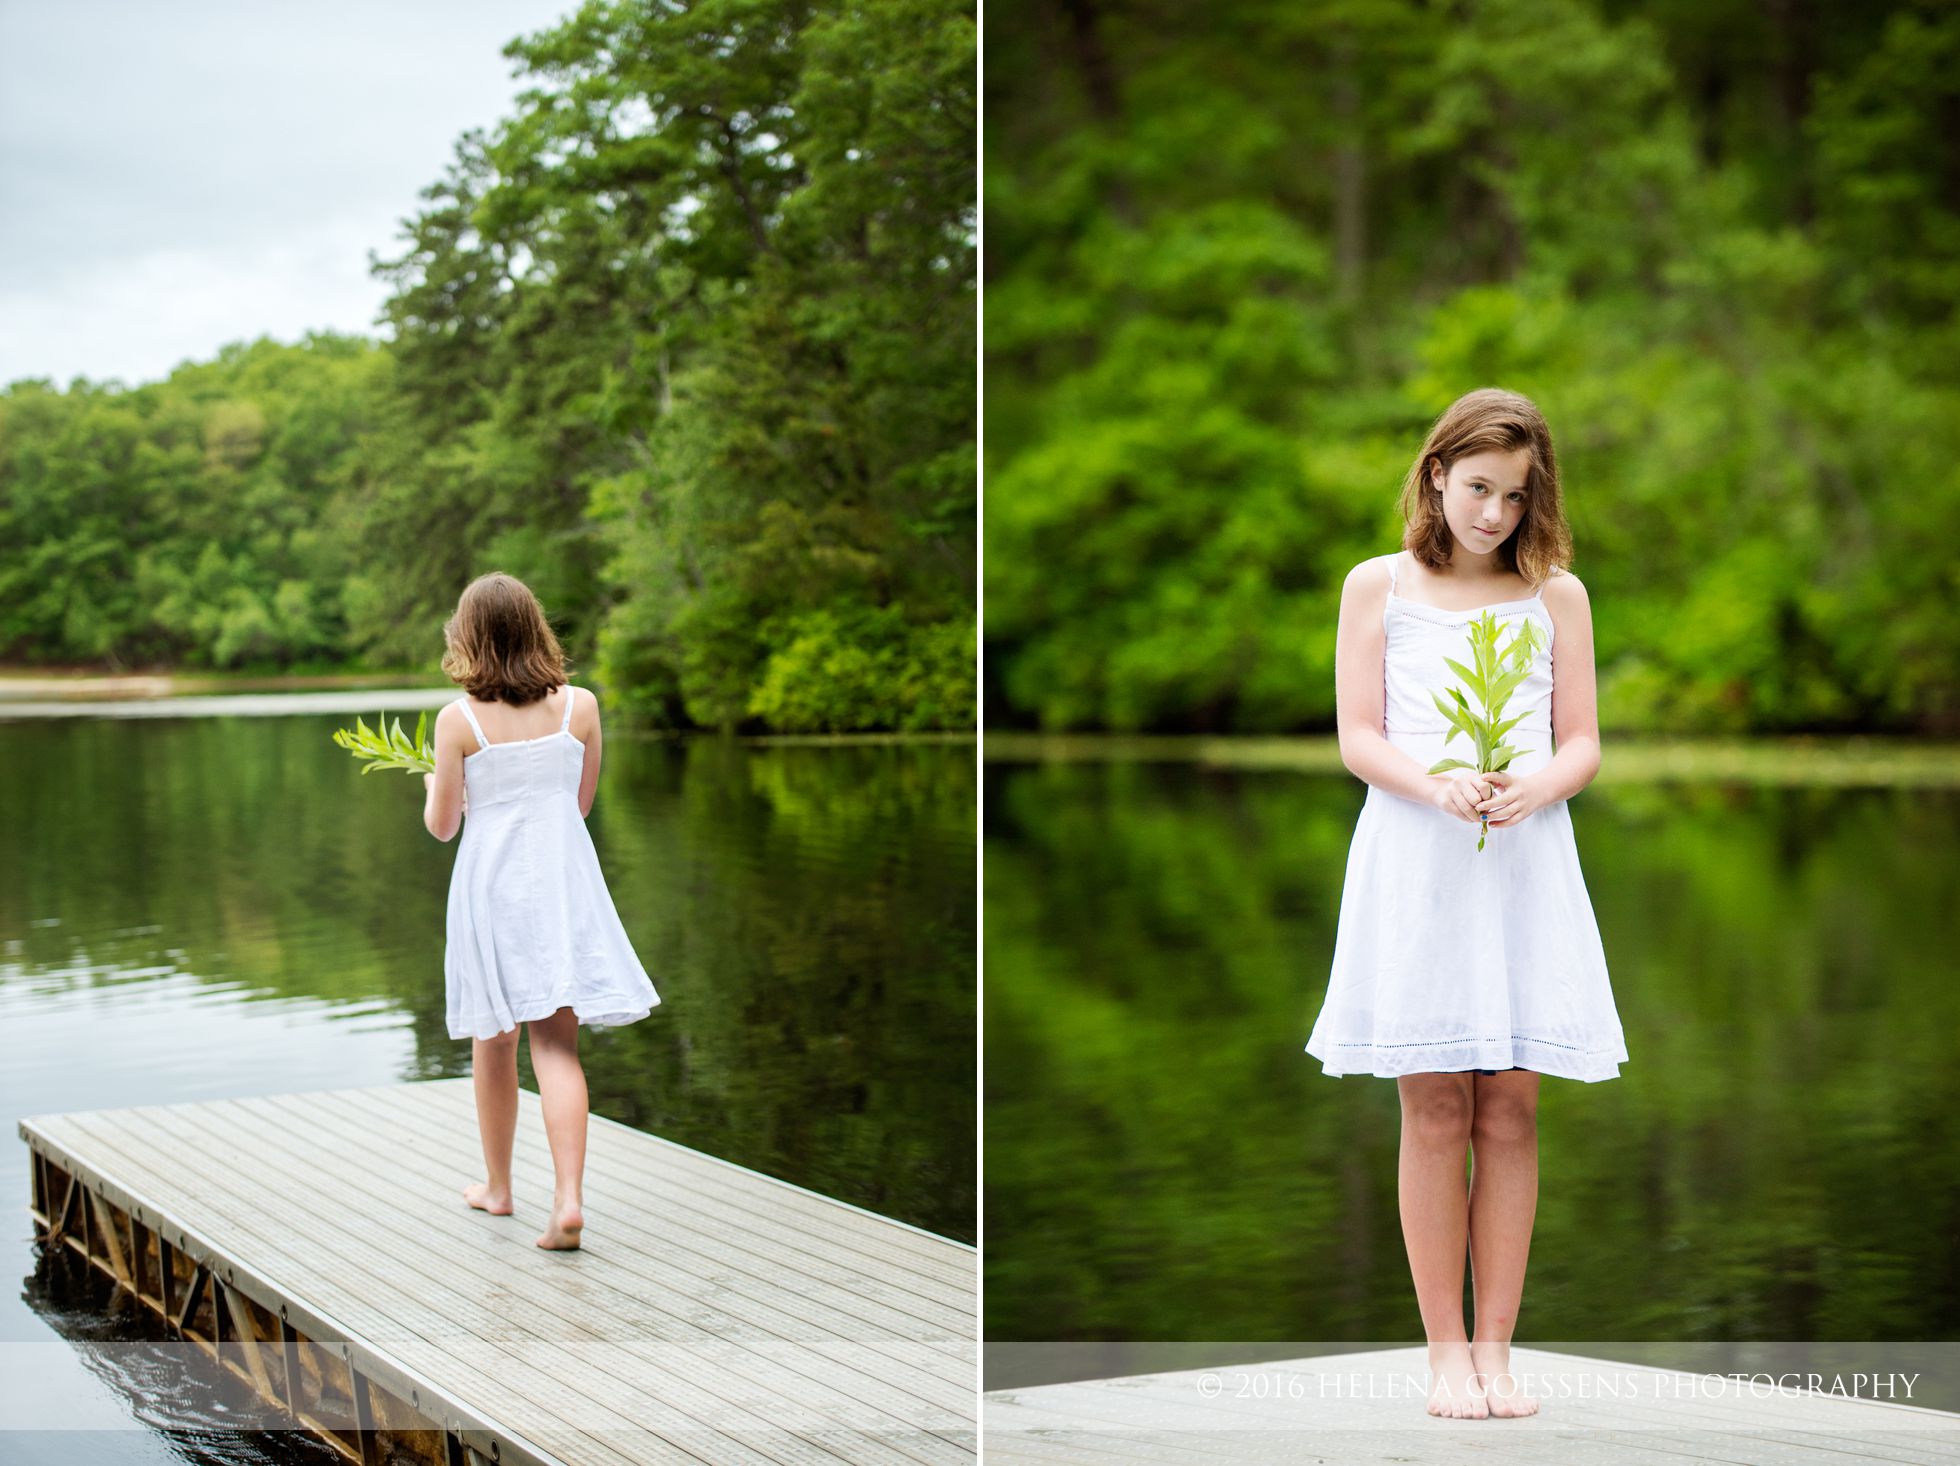 A girl at the lake